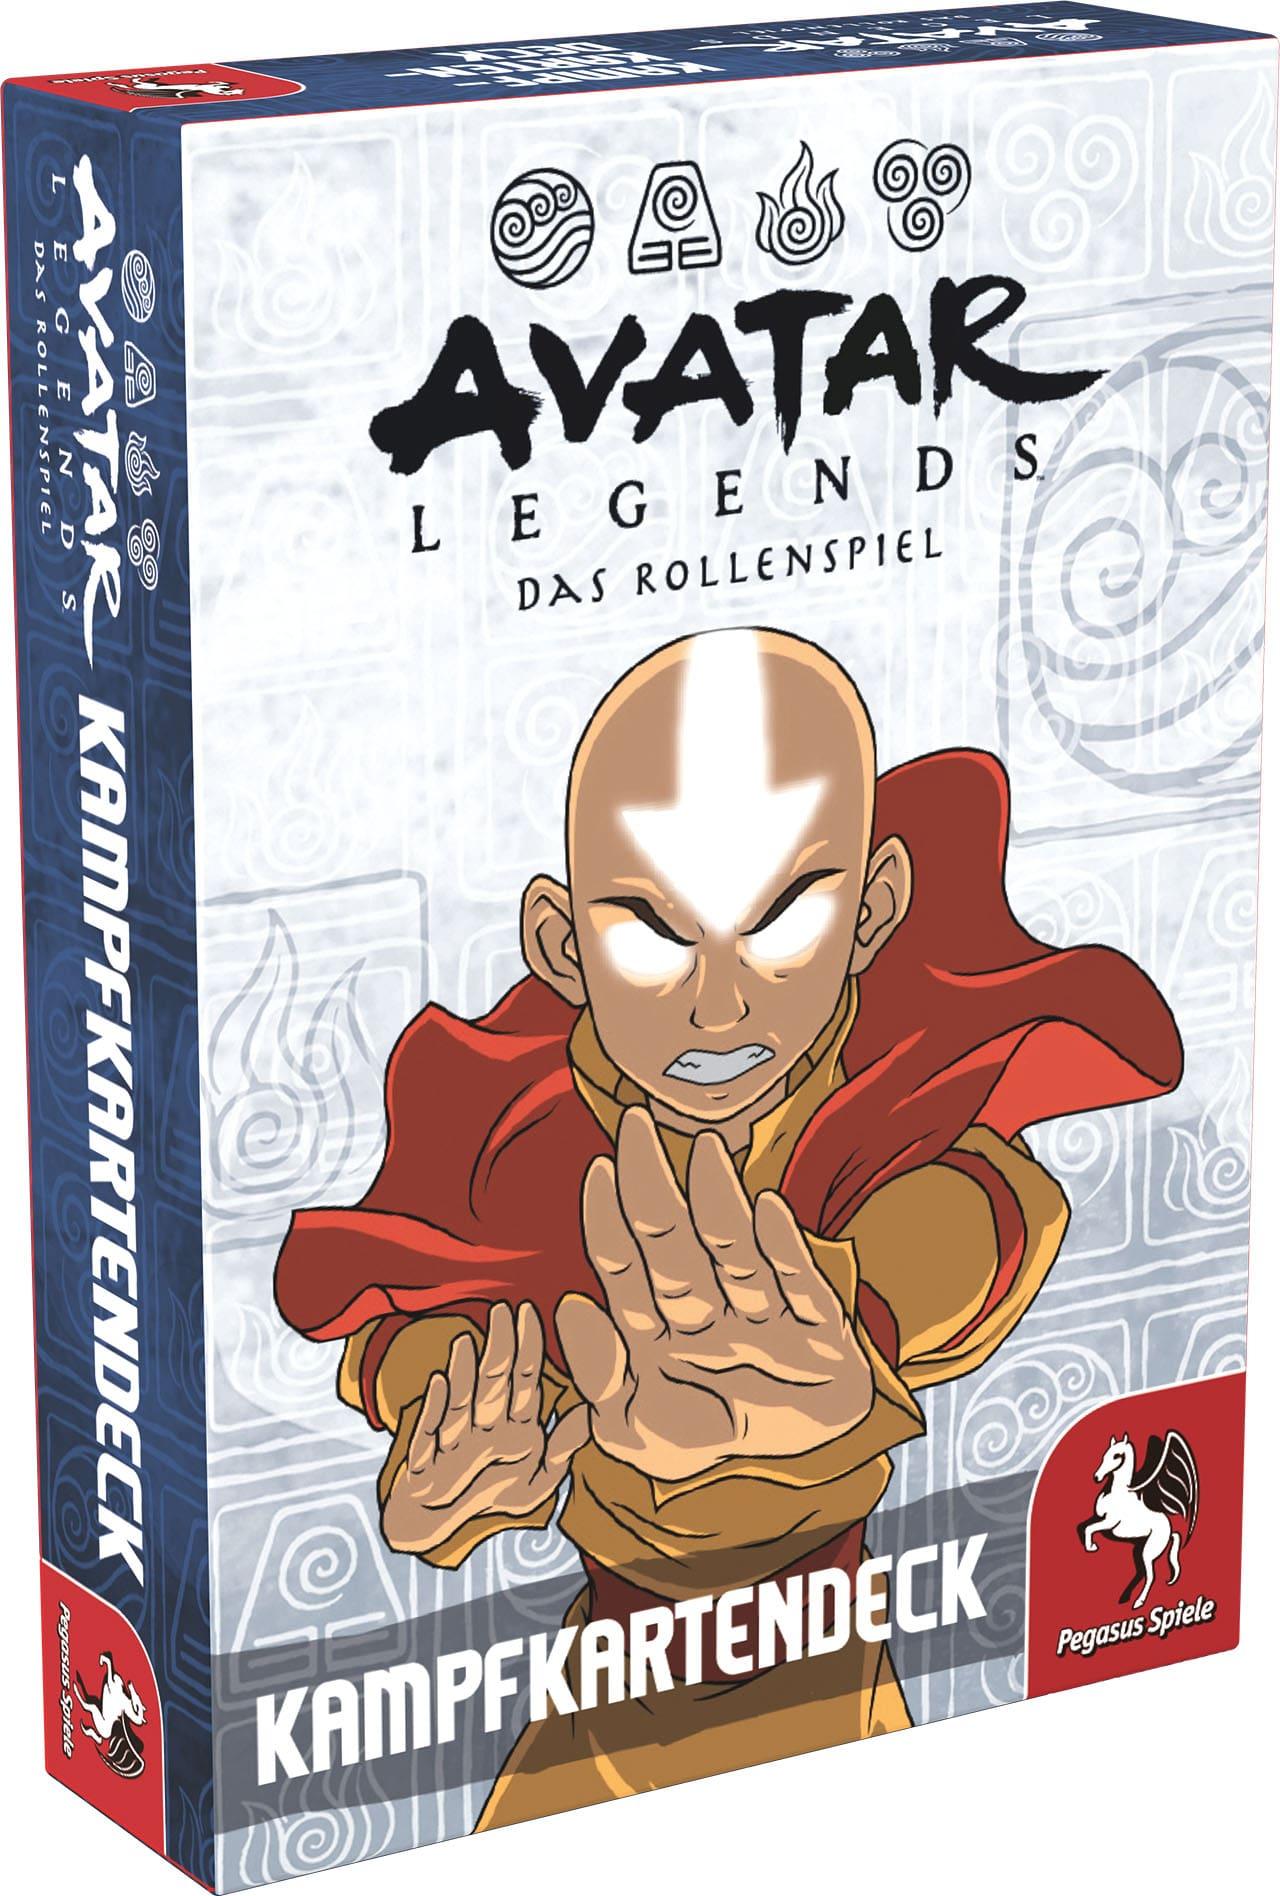 Avatar Legends: Das Rollenspiel - Kampfkartendeck